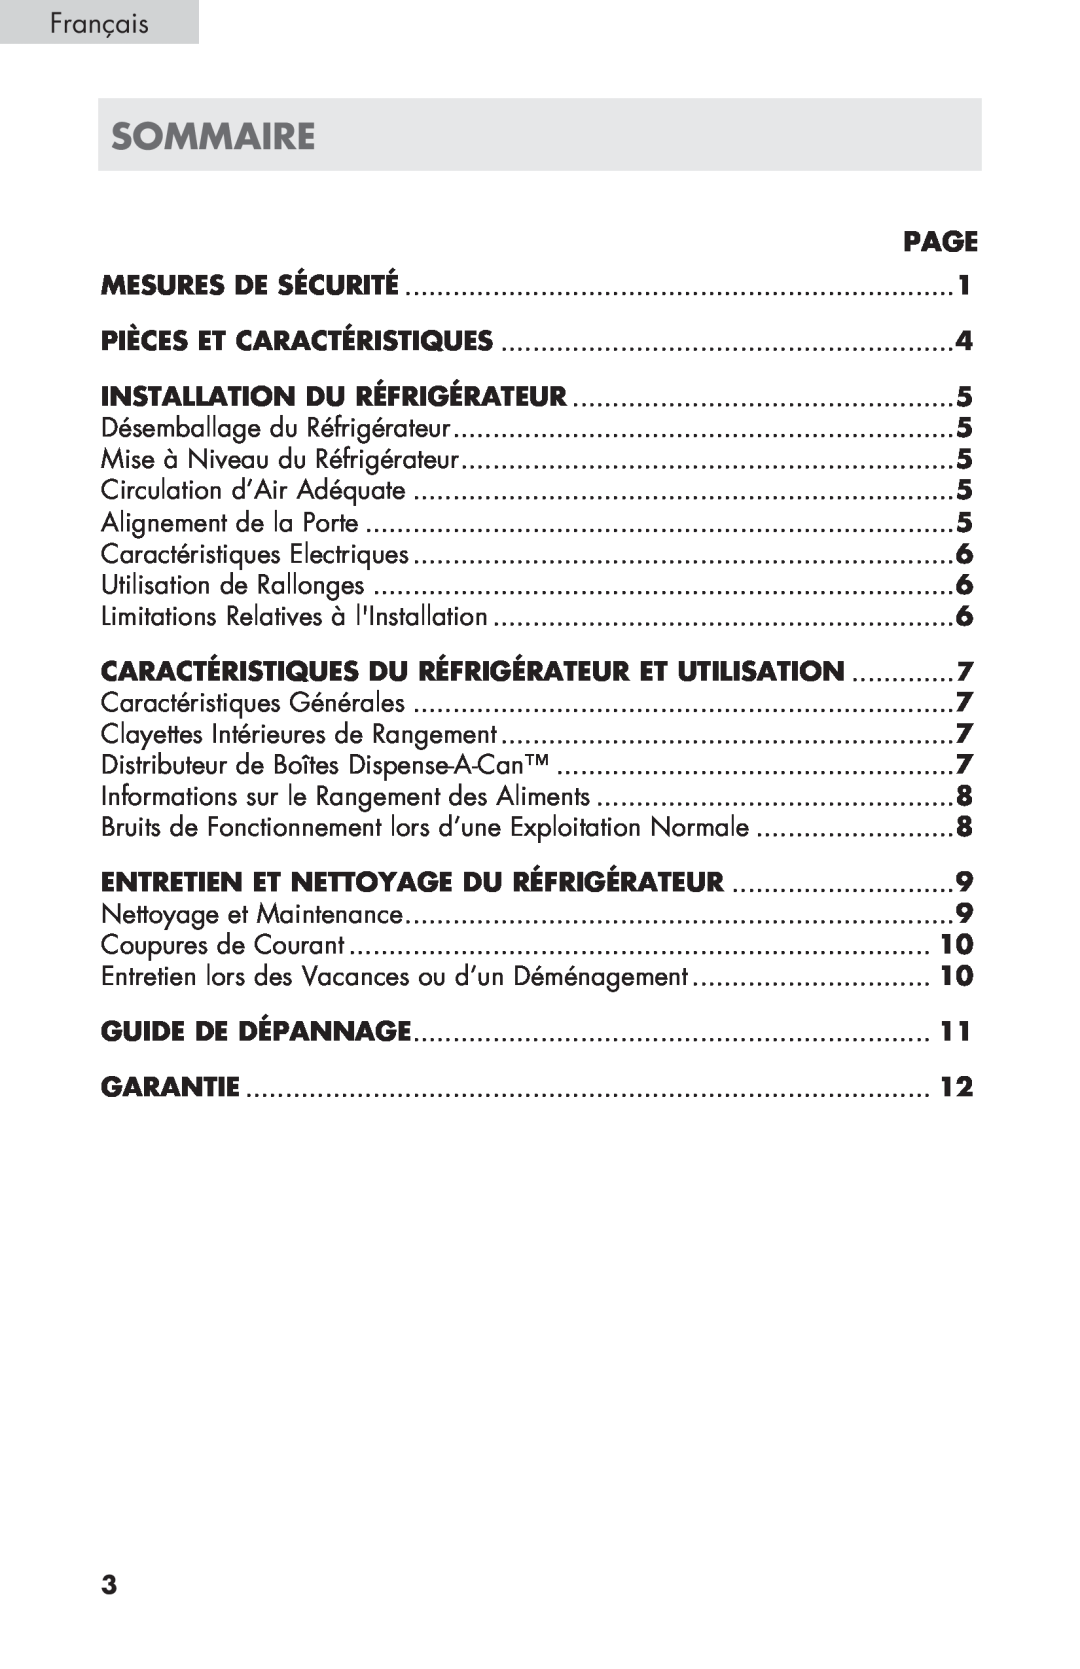 Haier ECR27B sommaire, Français, Installation du Réfrigérateur, Caractéristiques du réfrigérateur et utilisation, Page 